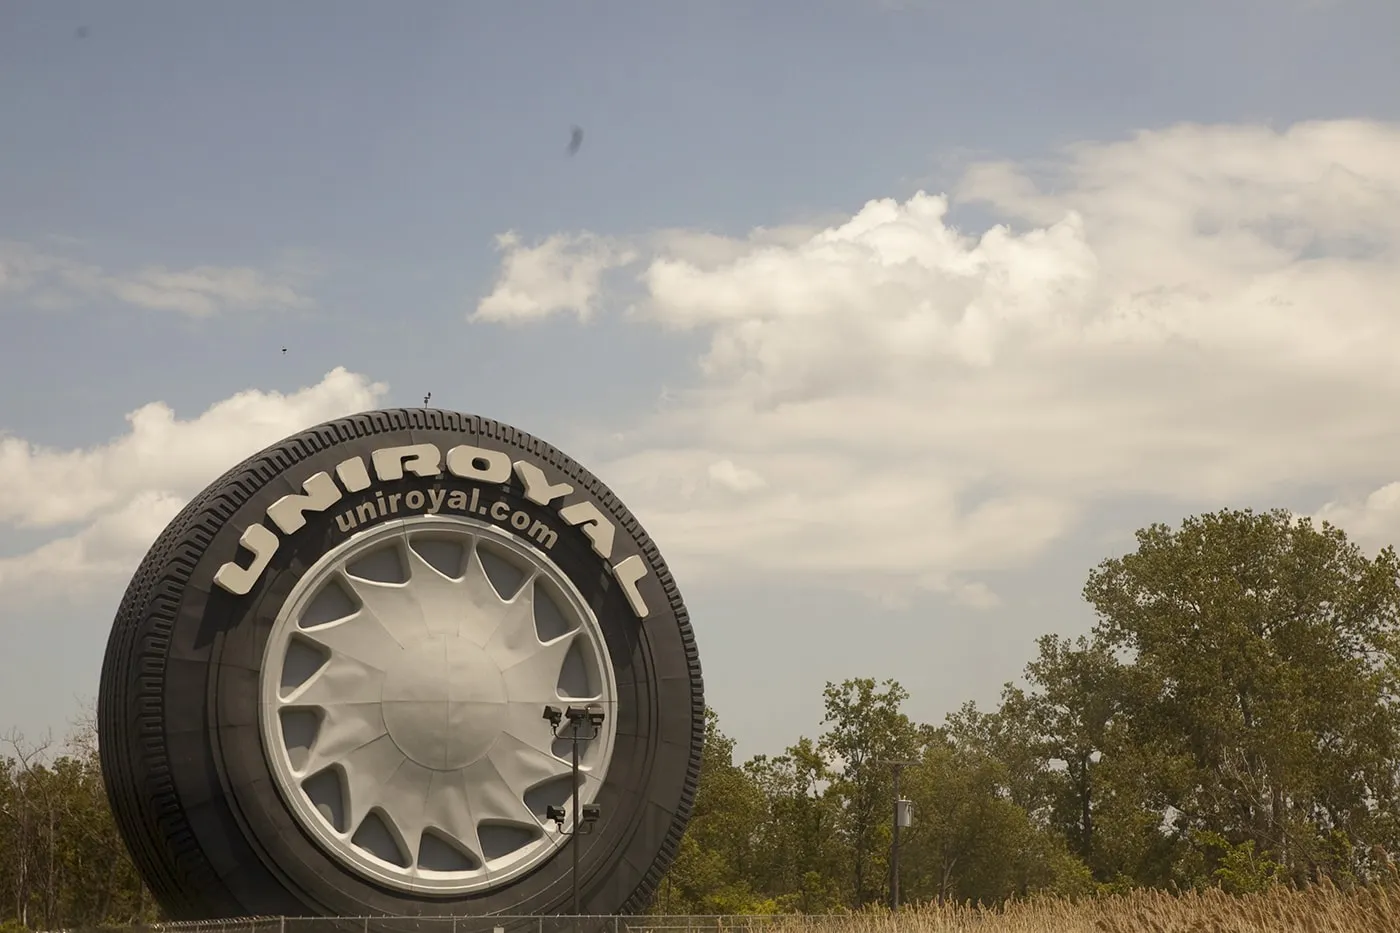 World's Largest Tire in Allen Park, Michigan